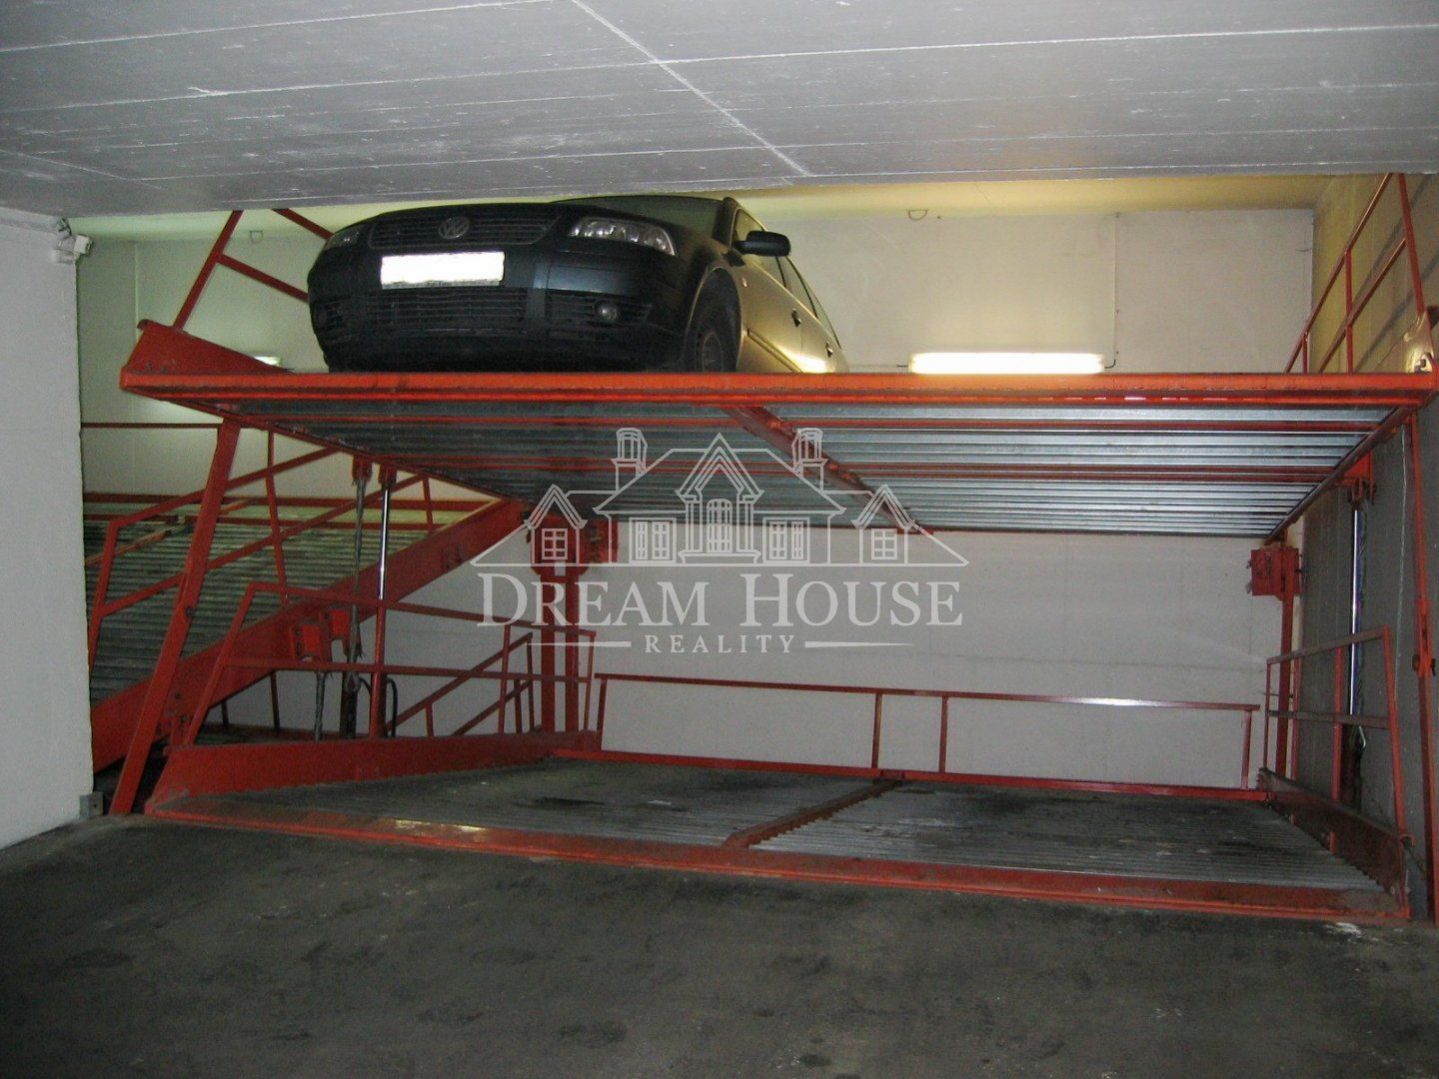 Pronájem parkovacího místa v podzemní garáži, Praha 2 - Vinohrady, v zakladači, obrázek č. 1